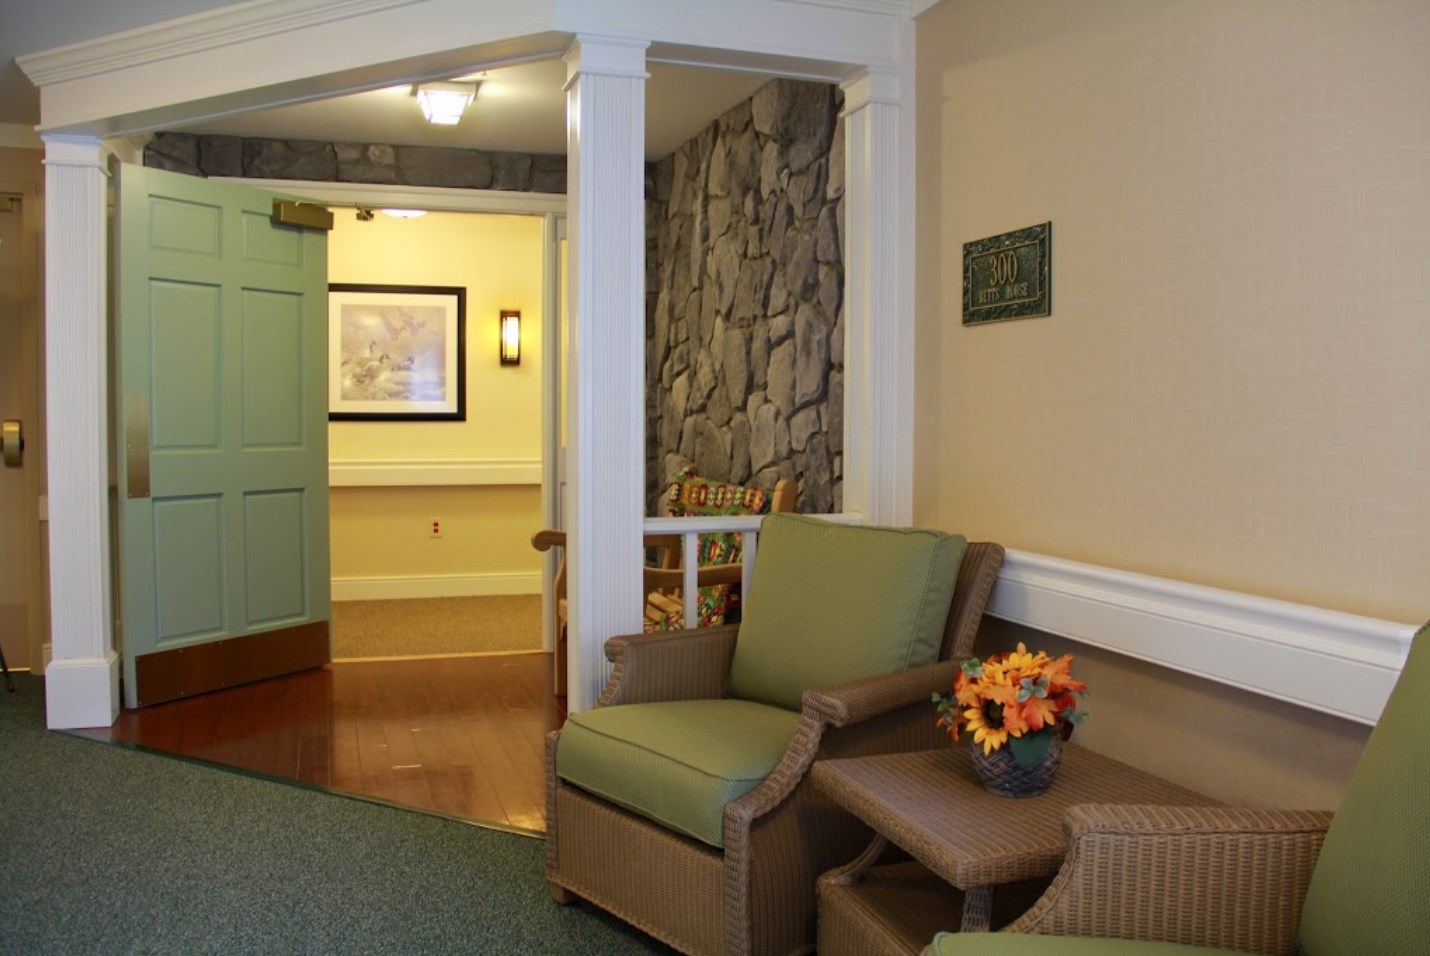 Interior of Olney Memory Care, a senior living community, featuring cozy living room decor.